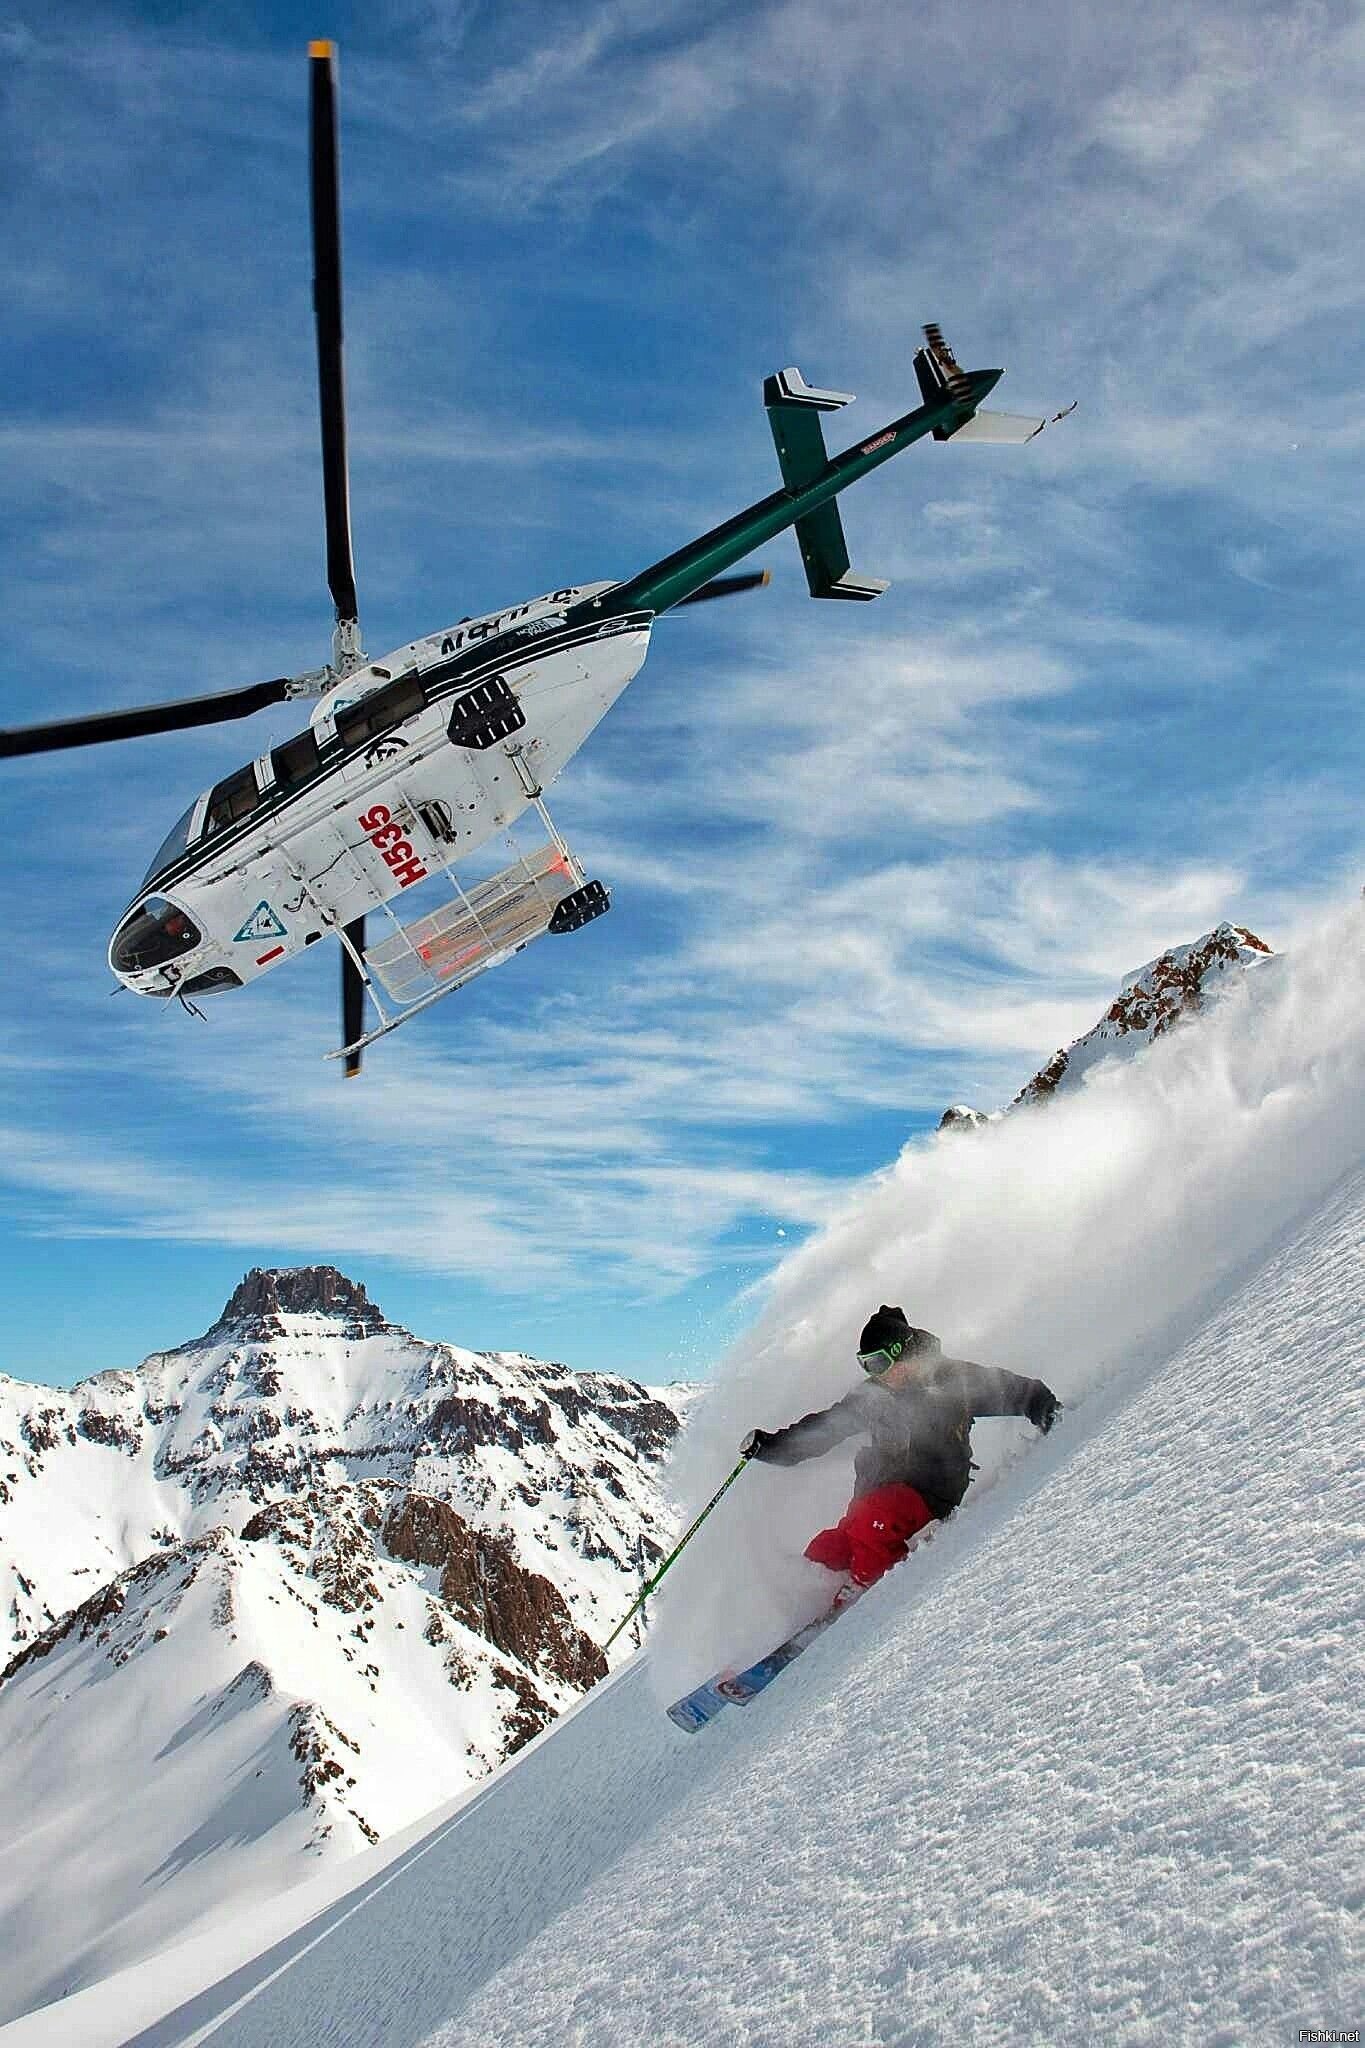 Вертолет шерегеш. Хелискиинг. Хели ски вид спорта. Горные лыжи. Сноуборд и вертолёт.